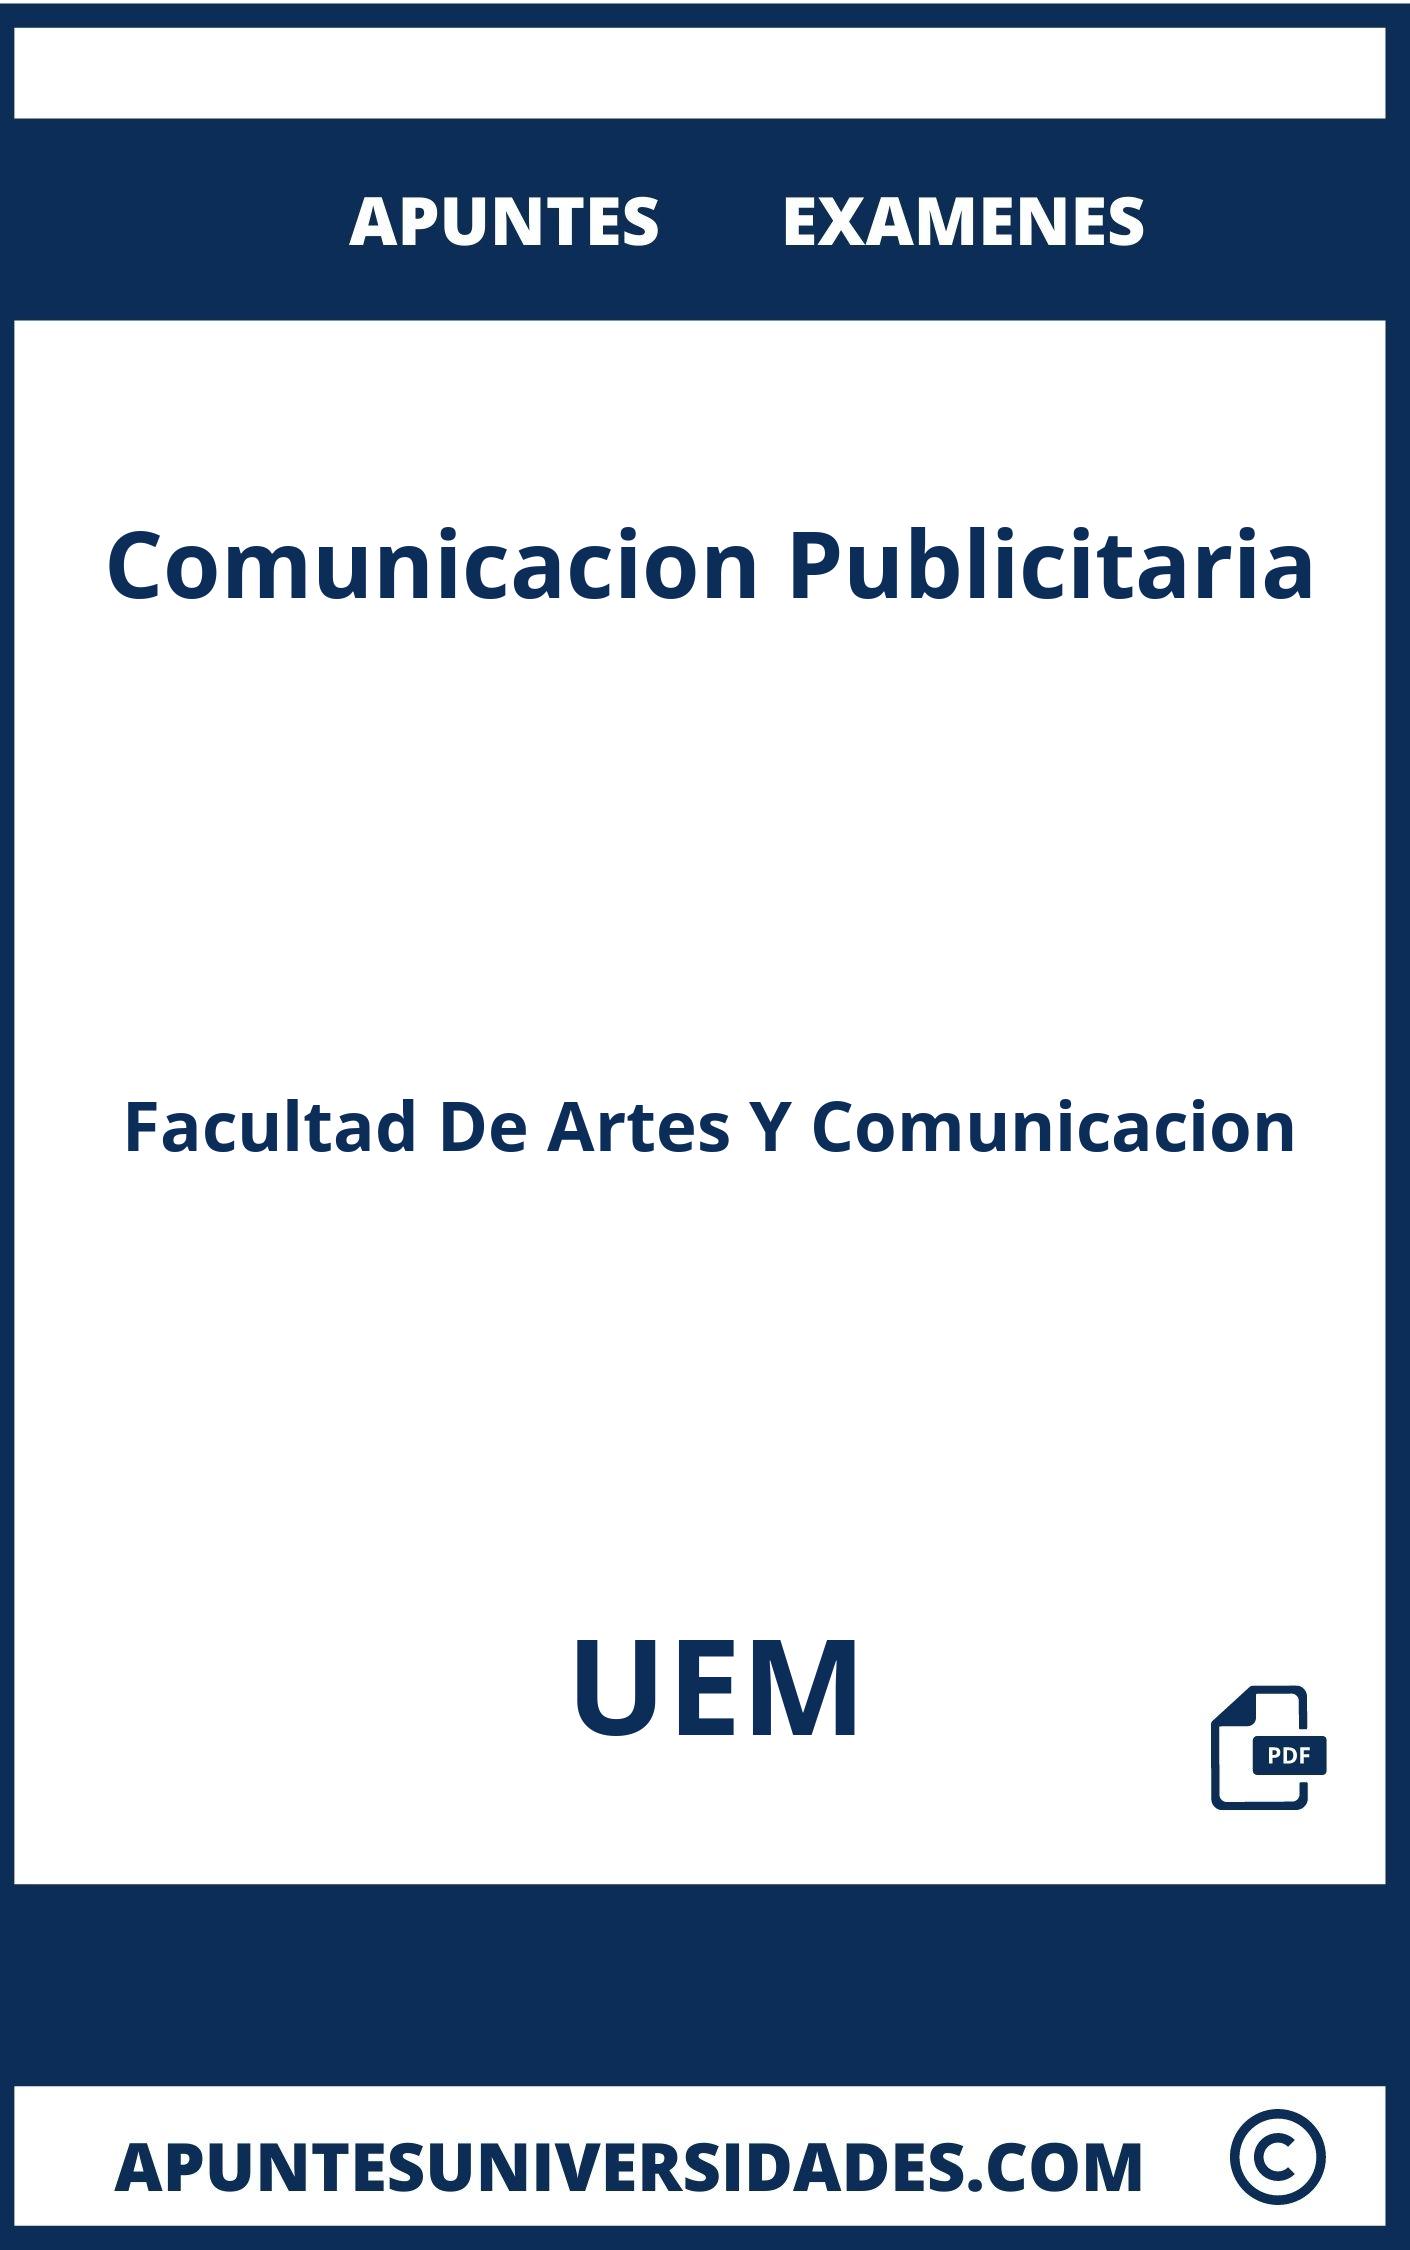 Apuntes Examenes Comunicacion Publicitaria UEM